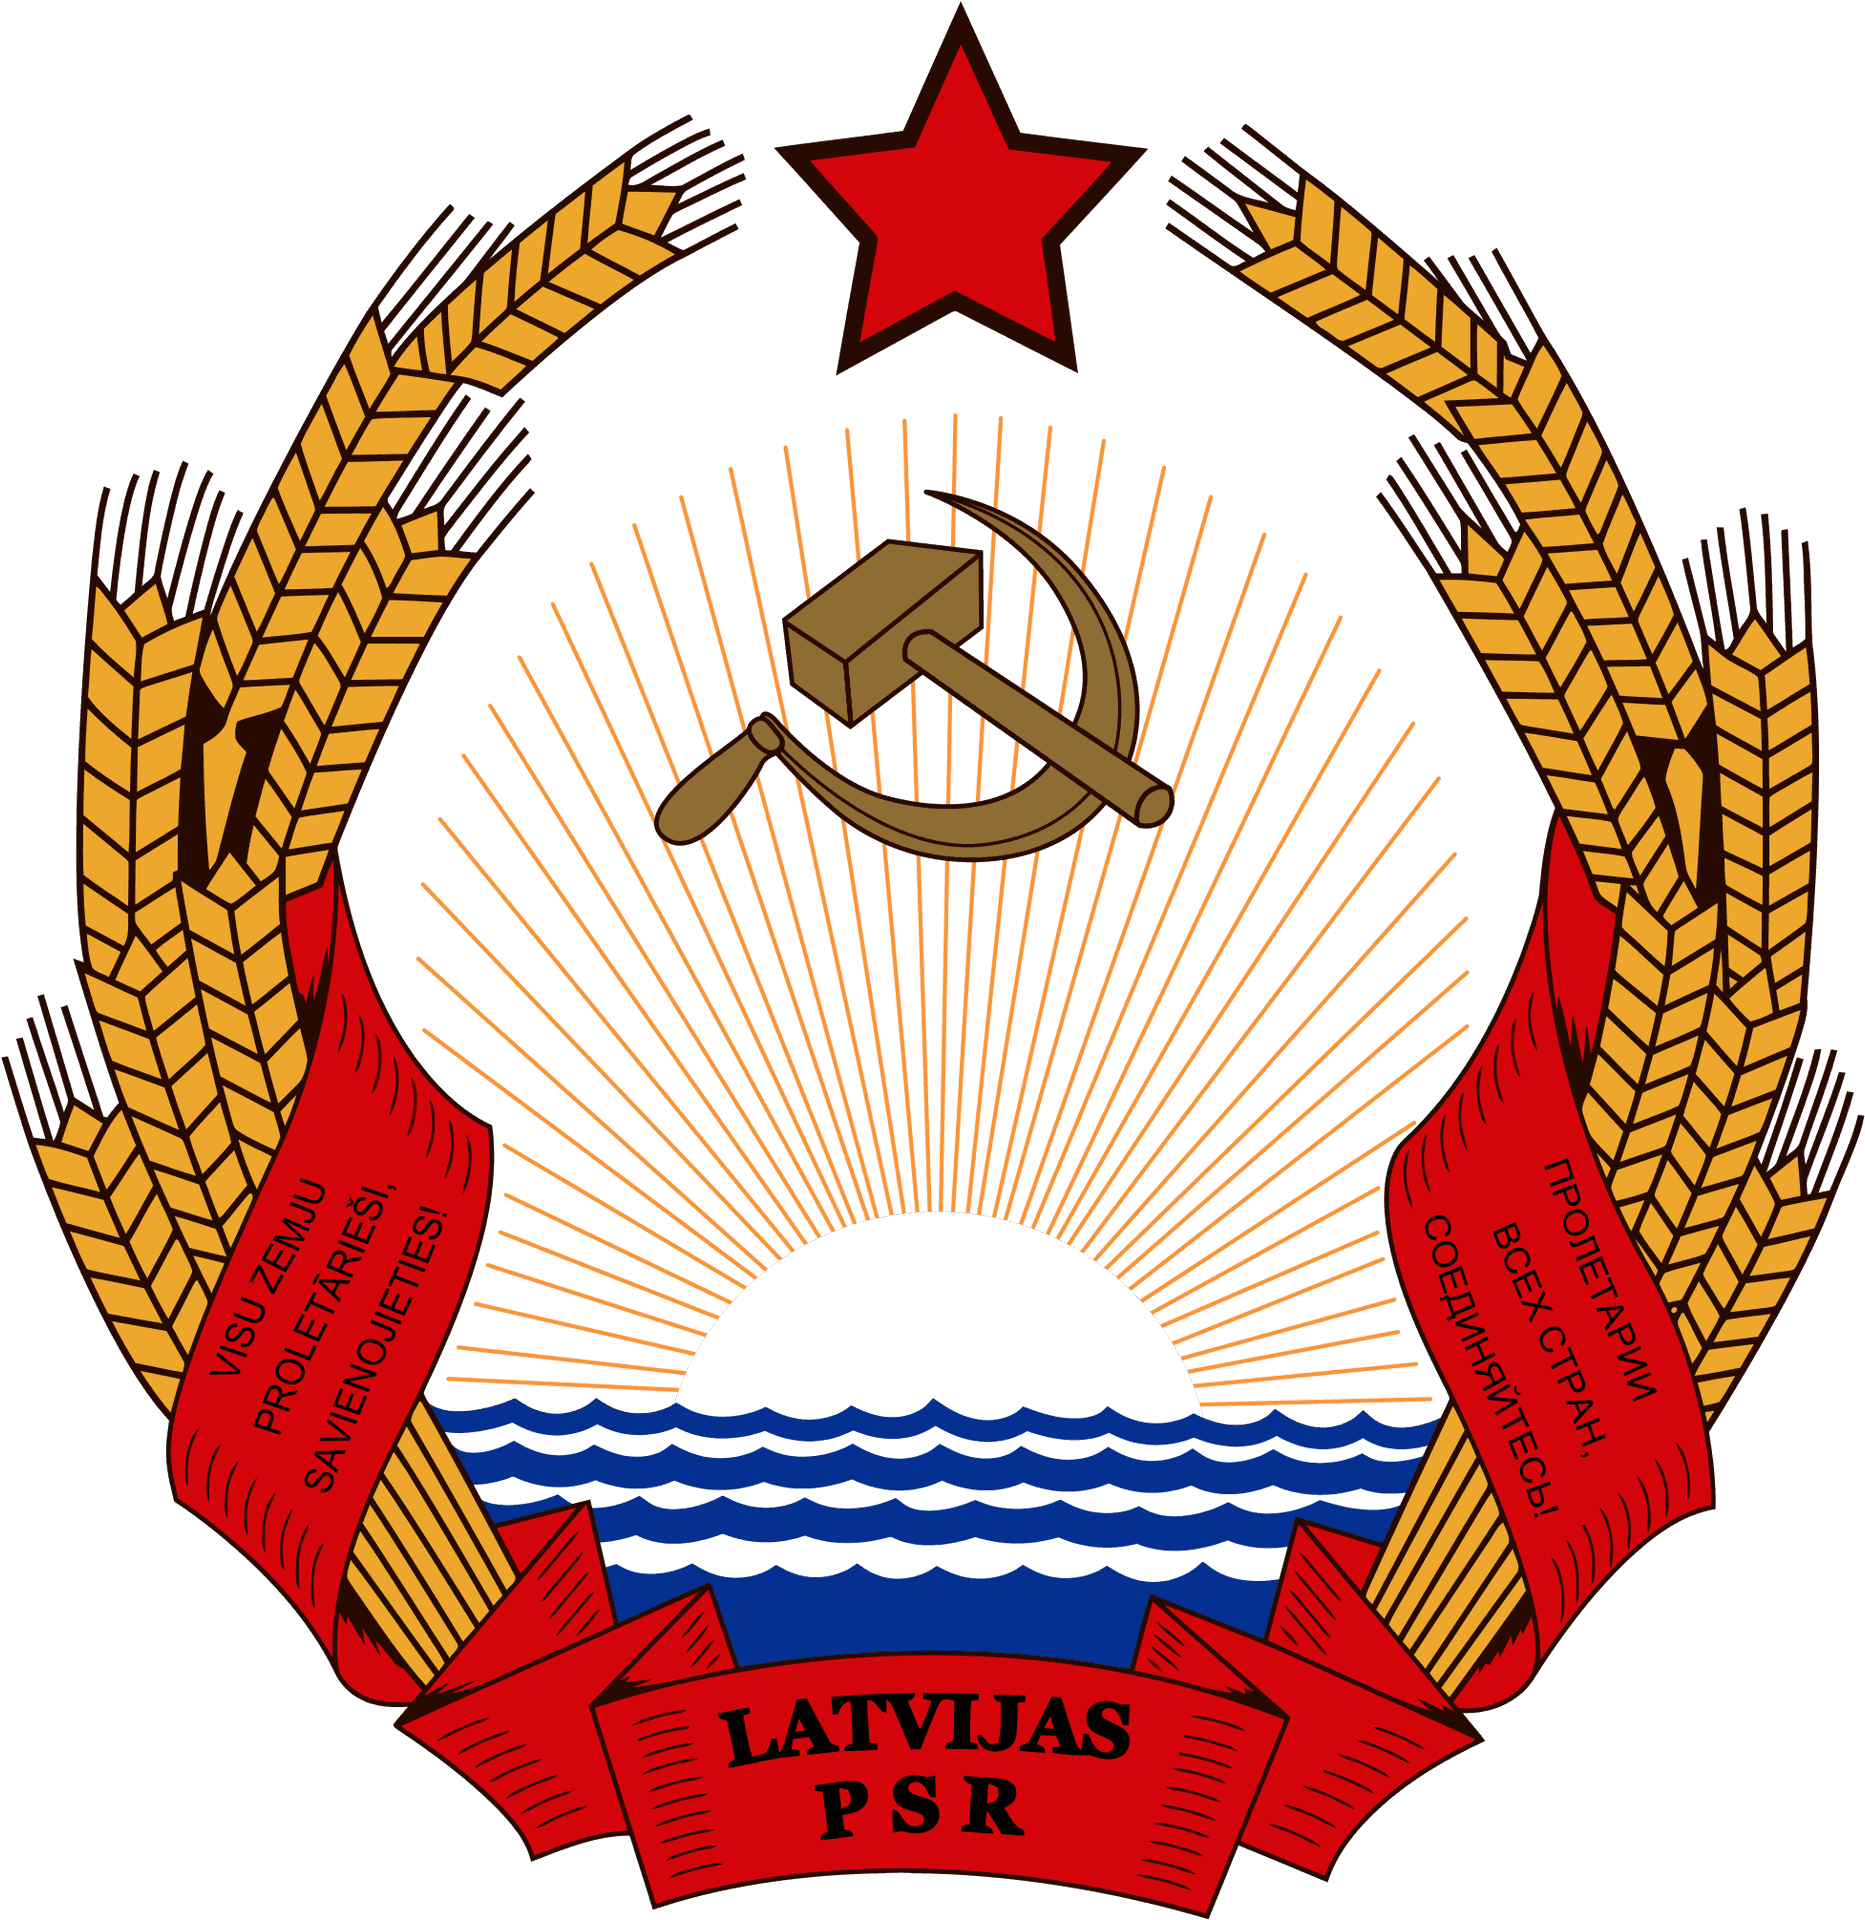 Latvian_ S S R_ Emblem PNG image